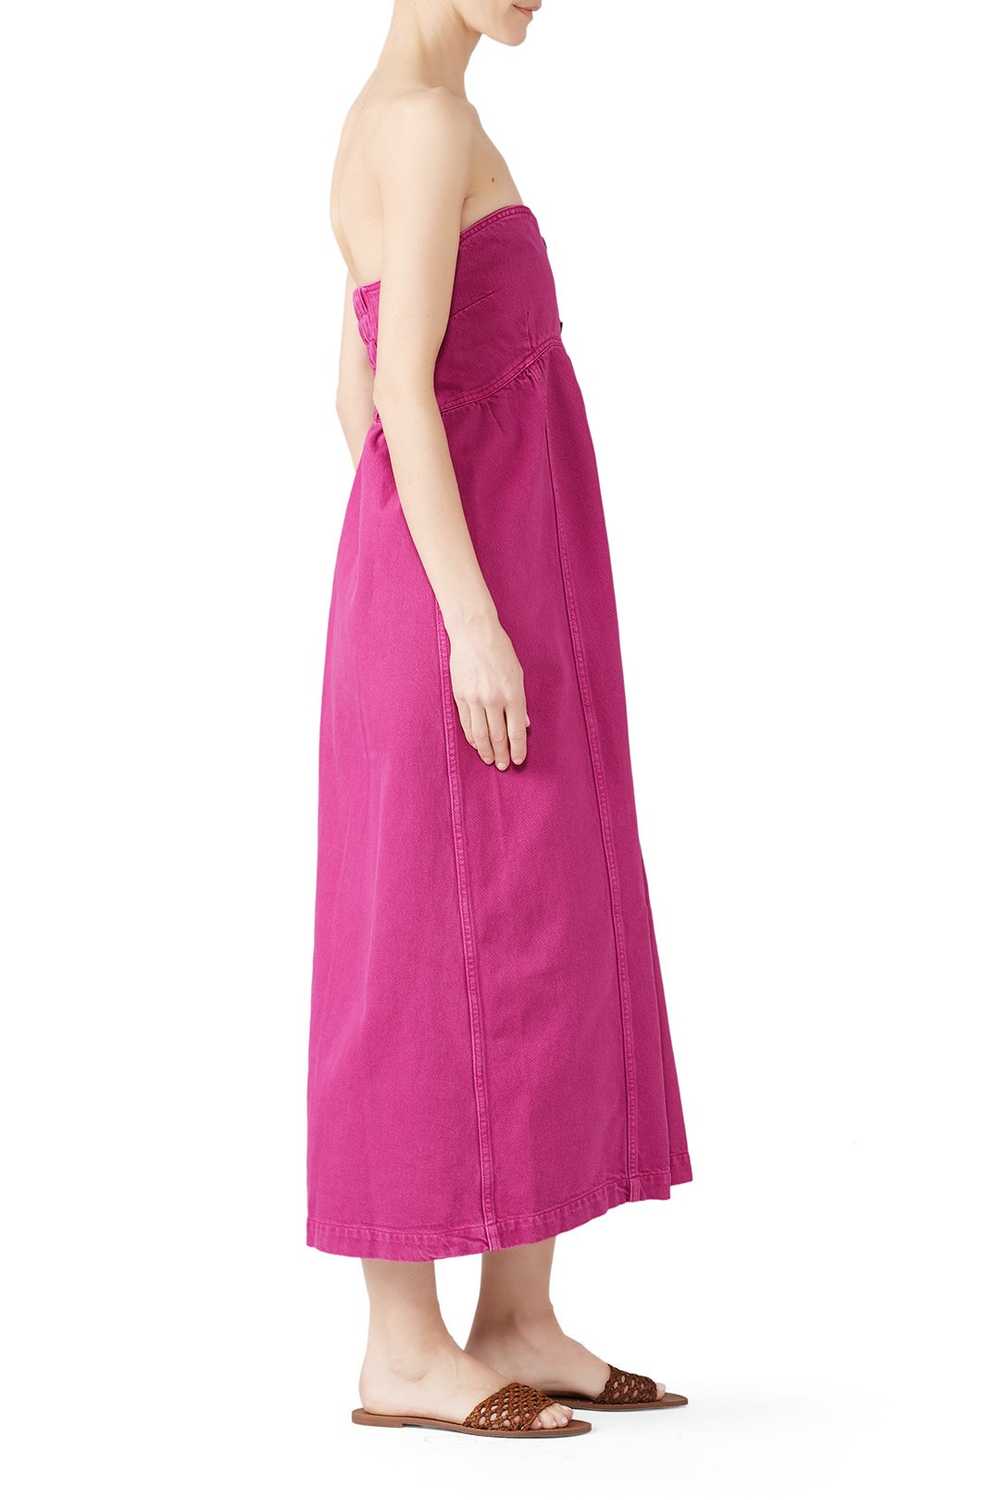 Nanushka Kaia Dress - image 3